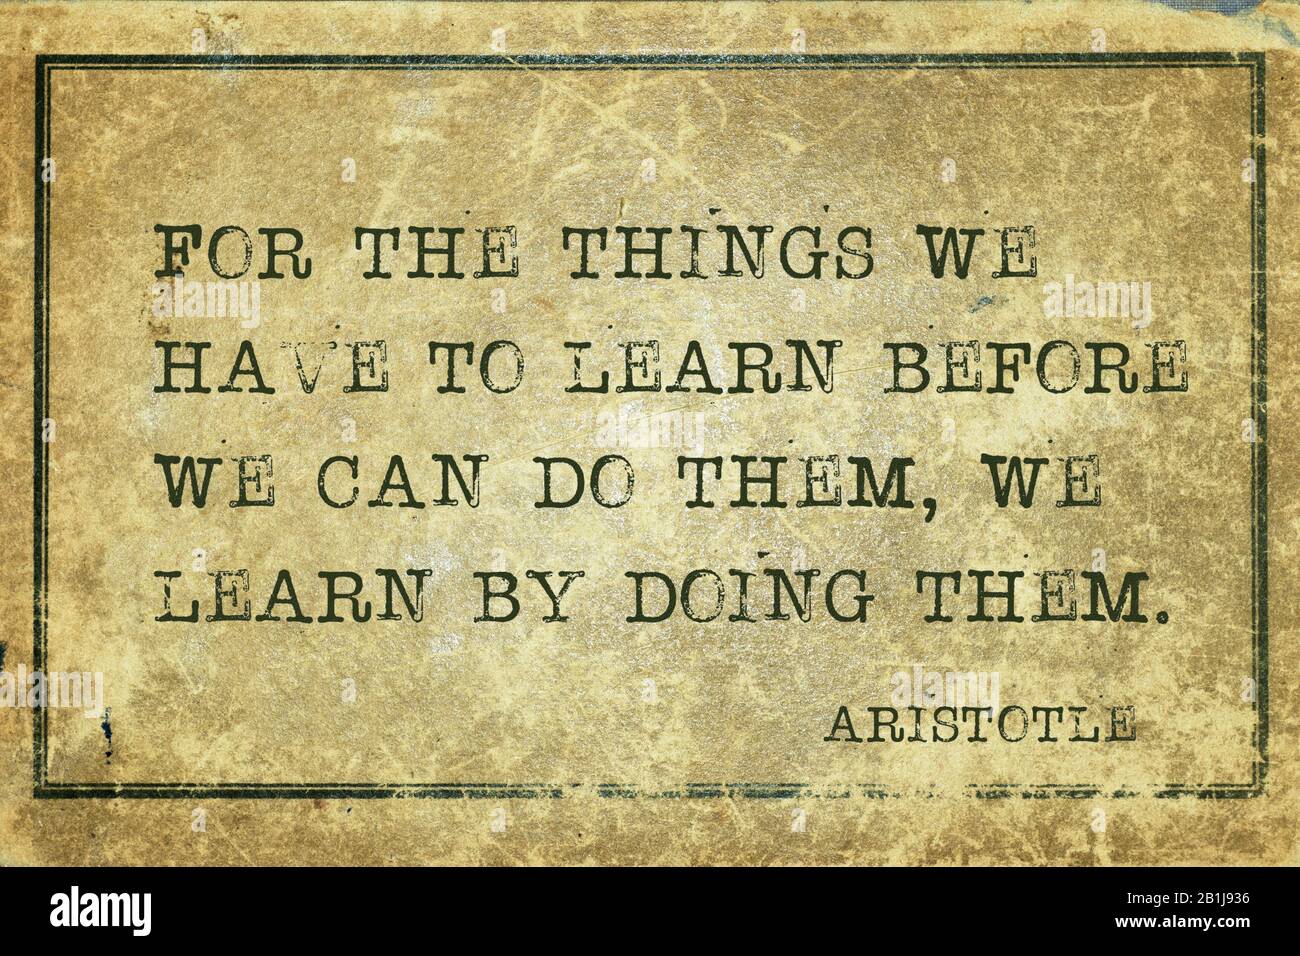 Pour les choses que nous devons apprendre avant de pouvoir les faire, nous apprenons en les faisant - ancien philosophe grec Aristote citation imprimée sur grunge vintage CA Banque D'Images